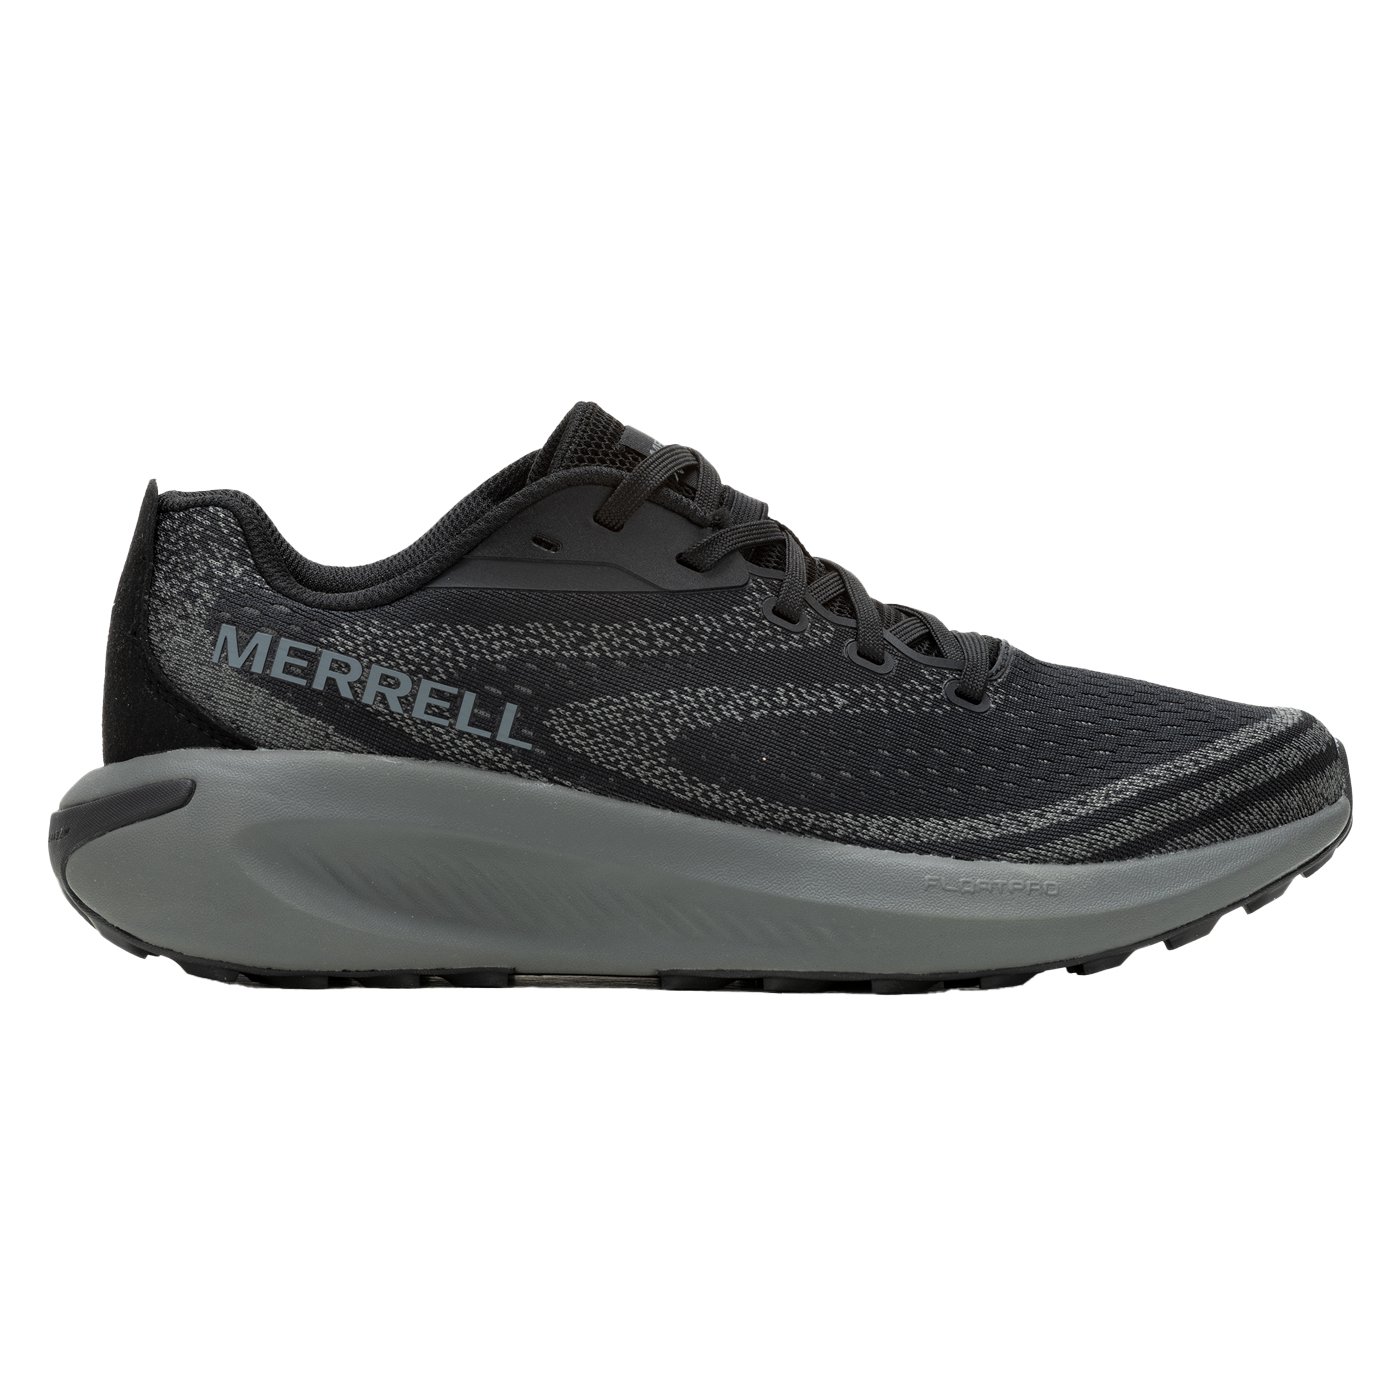 Merrell Morphlite Erkek Patika Koşu Ayakkabısı - Siyah - 1